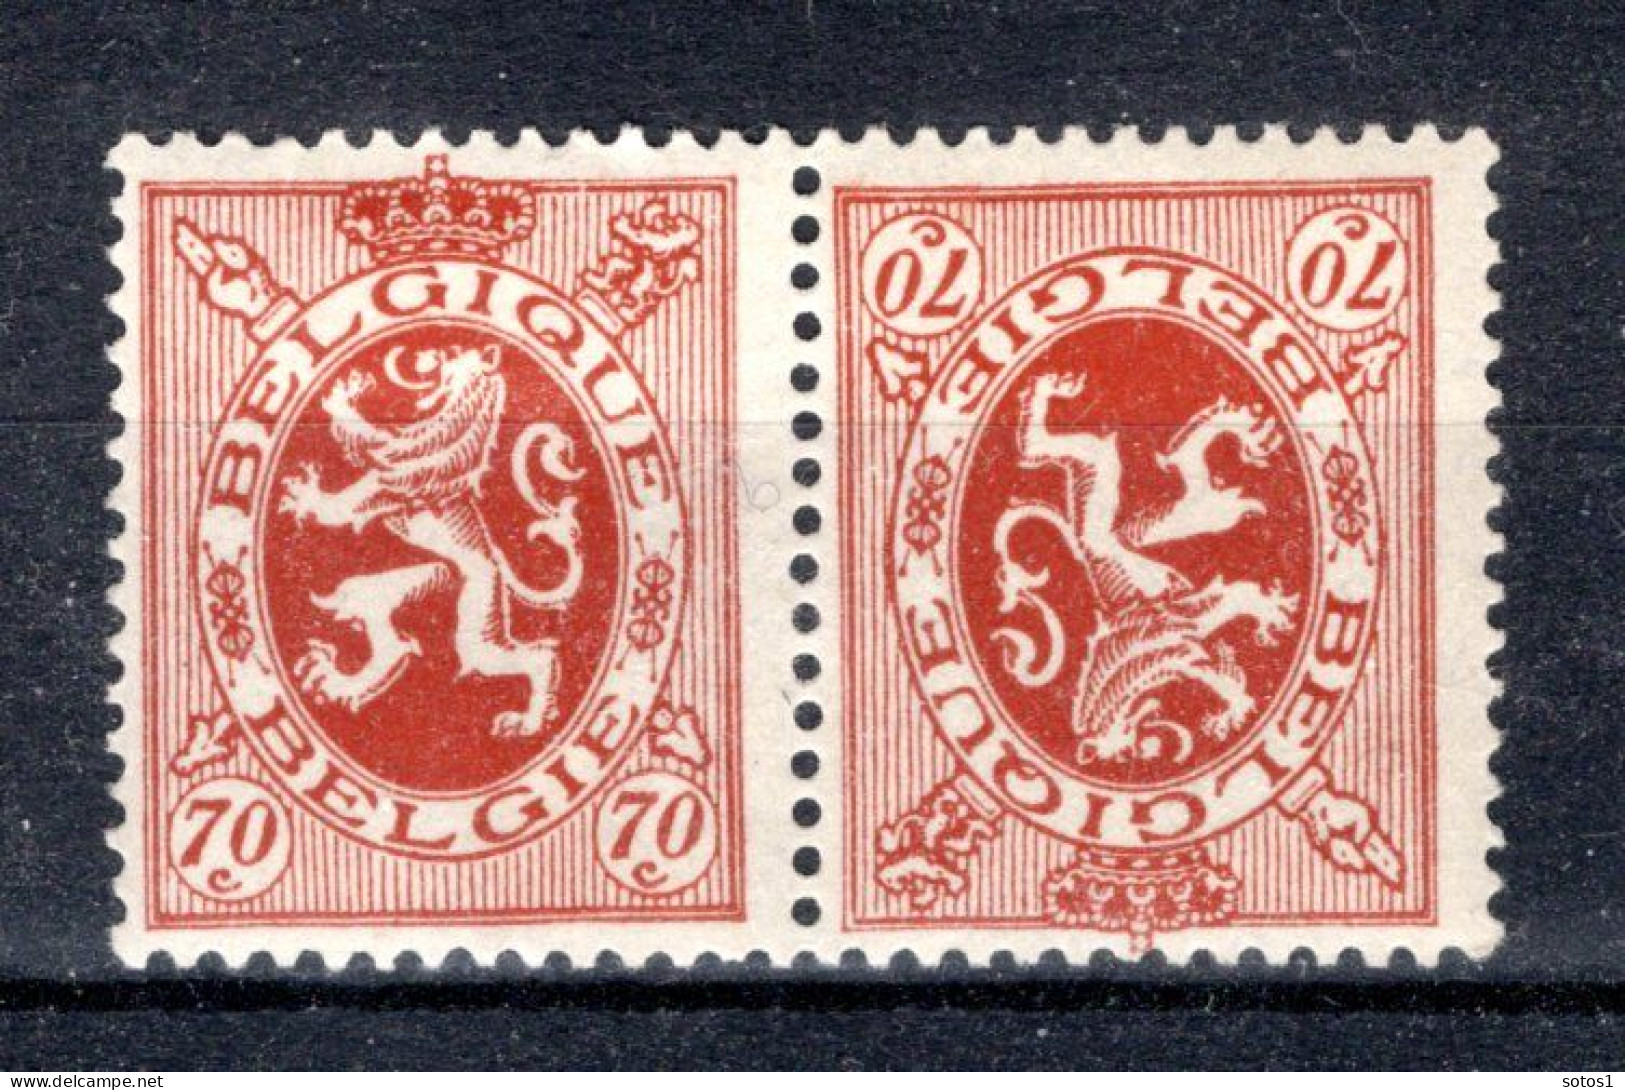 KP10 MH 1929-1932 - Heraldieke Leeuw -2 - Sot - Tete Beche [KP] & Interpaneles [KT]